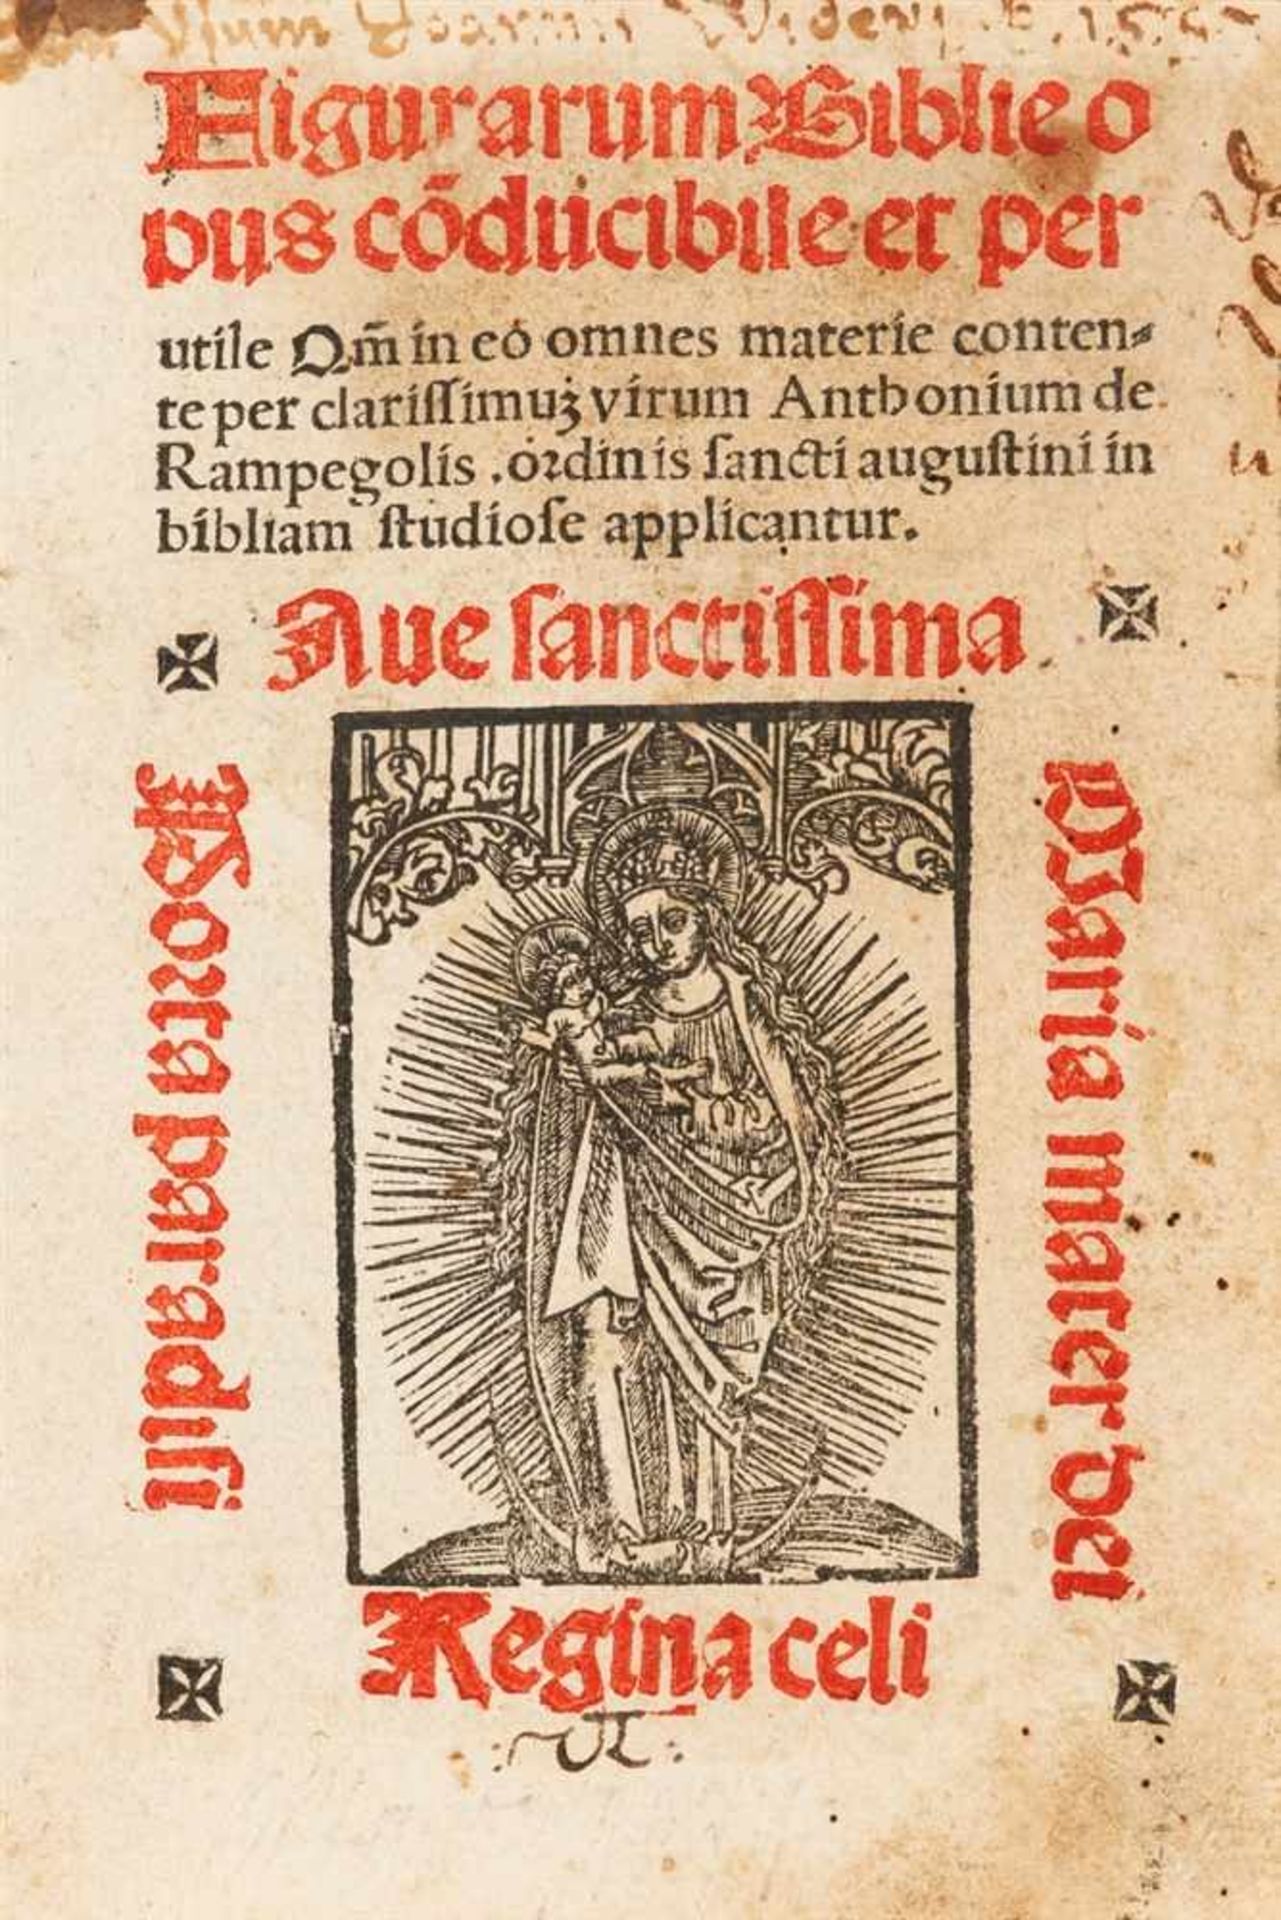 Rampigollis (Rampegolus), Antonius: Figurarum Biblie opus co[n]ducibile et perutile. Köln: (